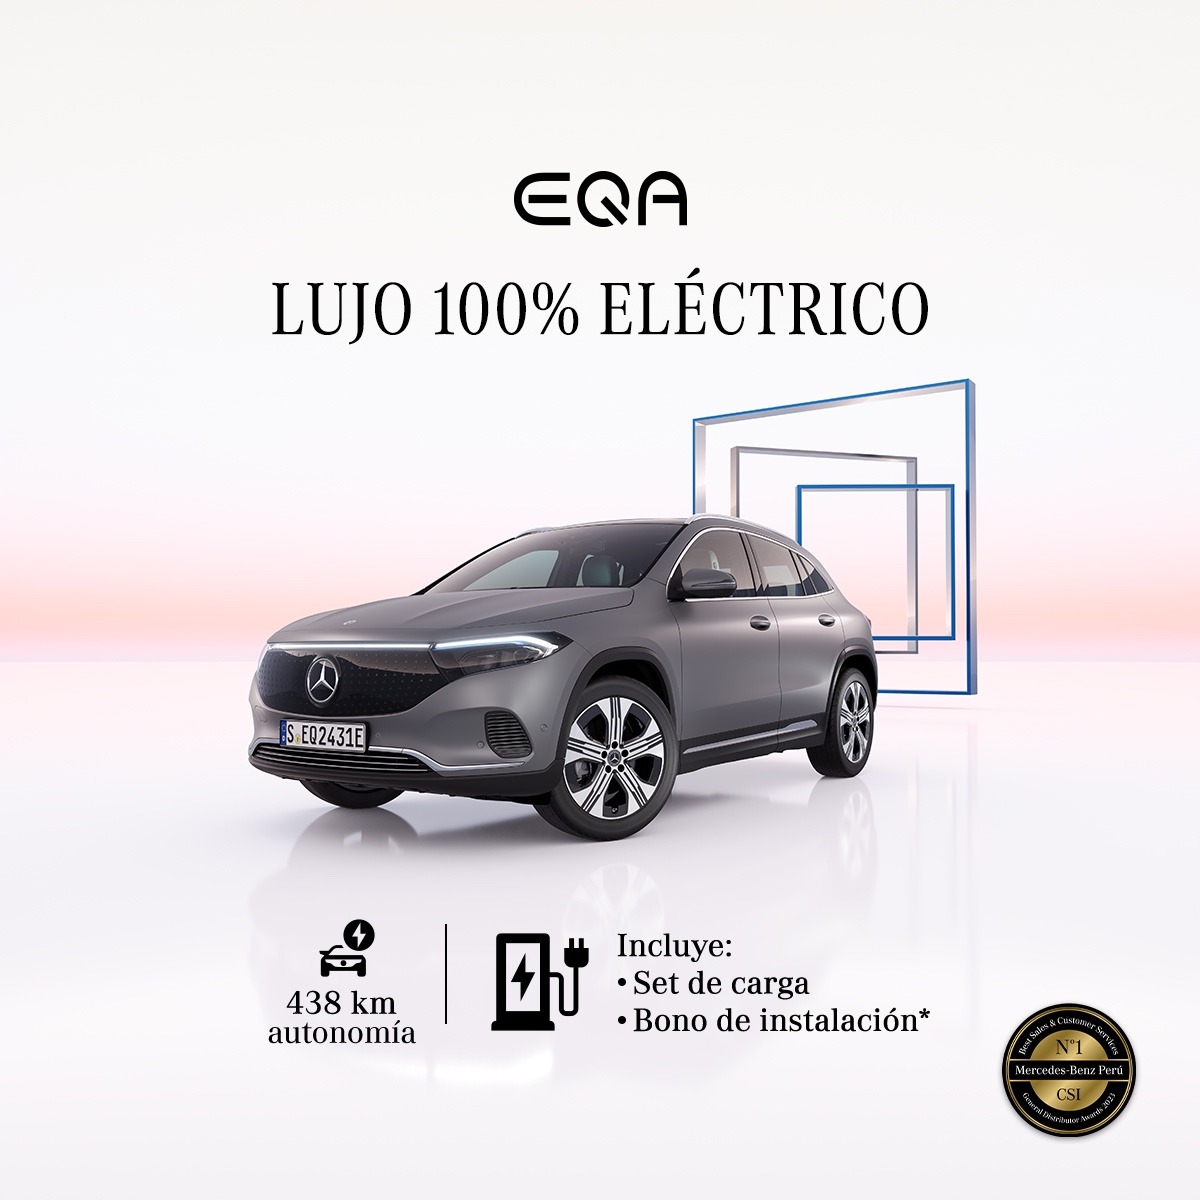 EQA, vive el lujo 100% eléctrico